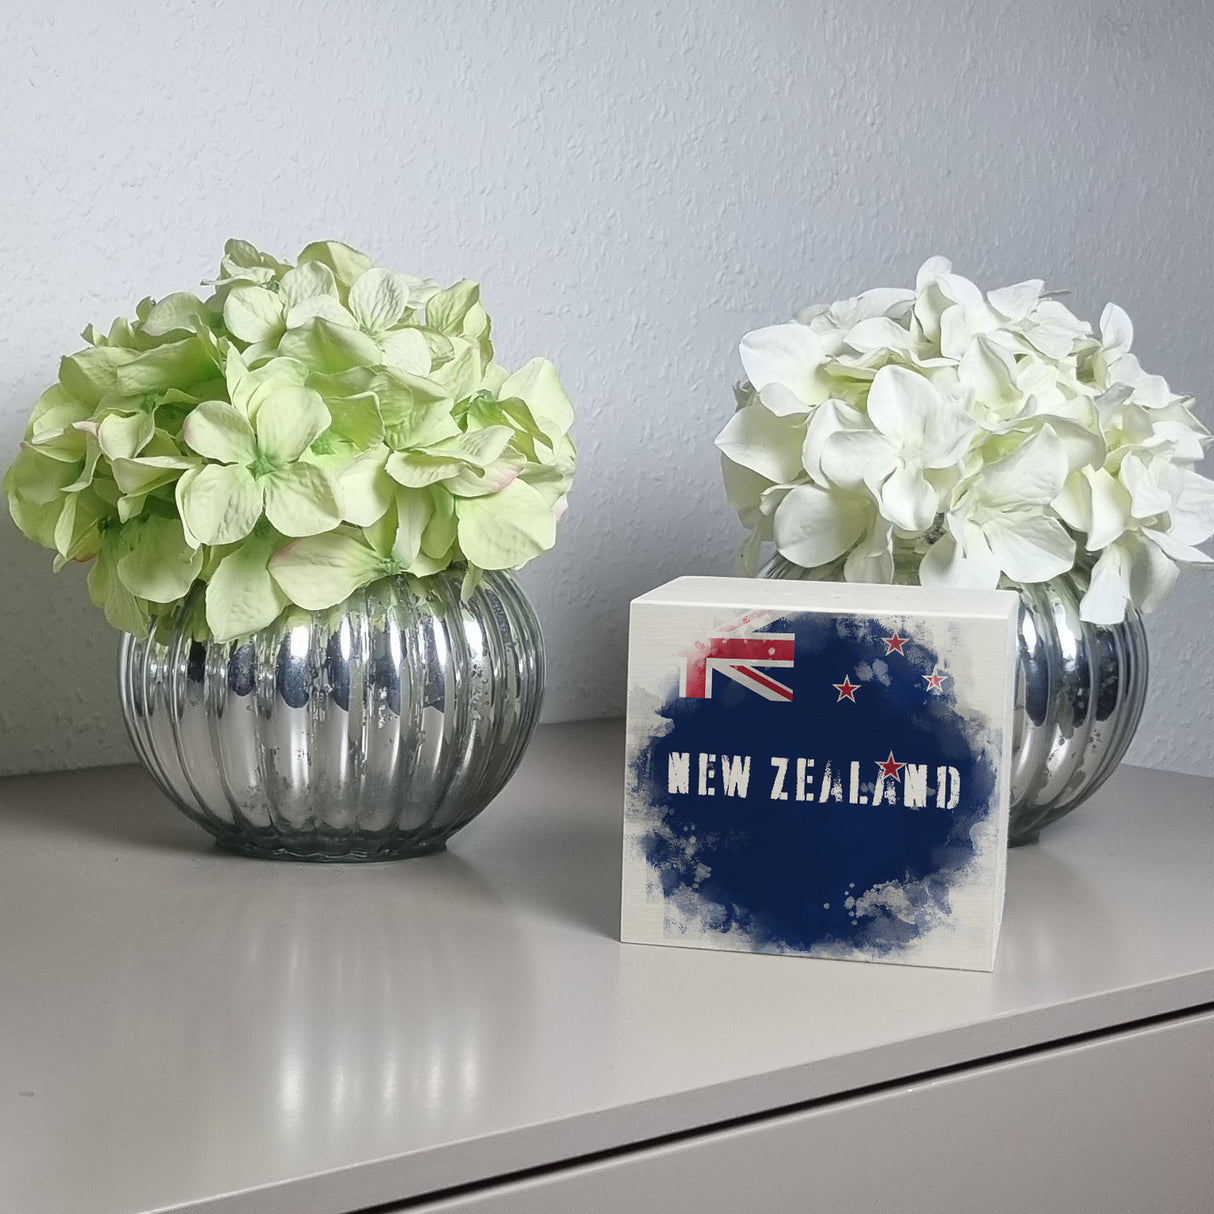 Spardose mit Neuseeland-Flagge im Used Look - Sparschwein für Urlauber